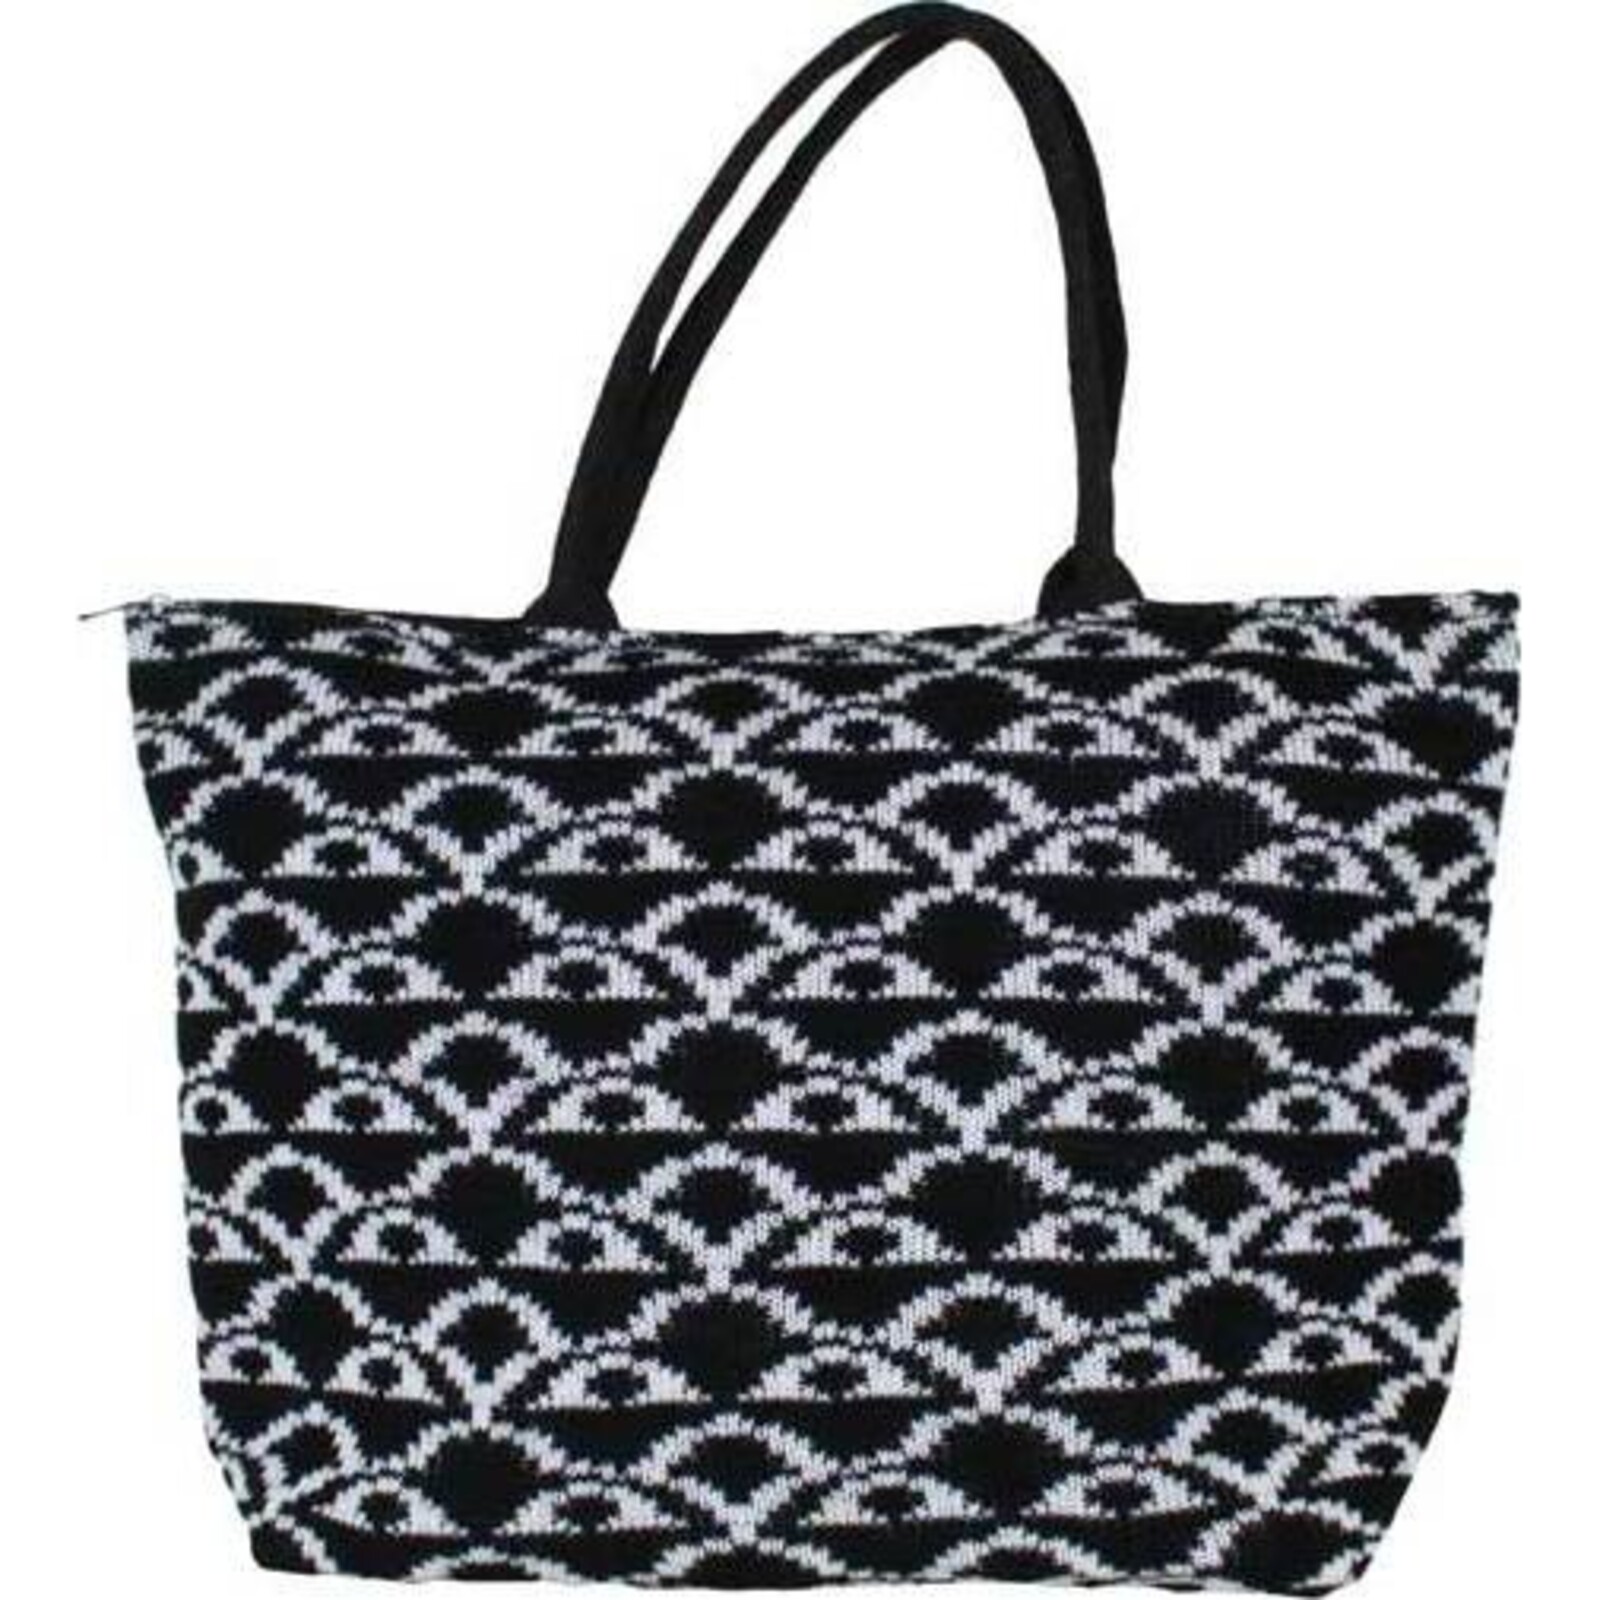 Knit Bag Black